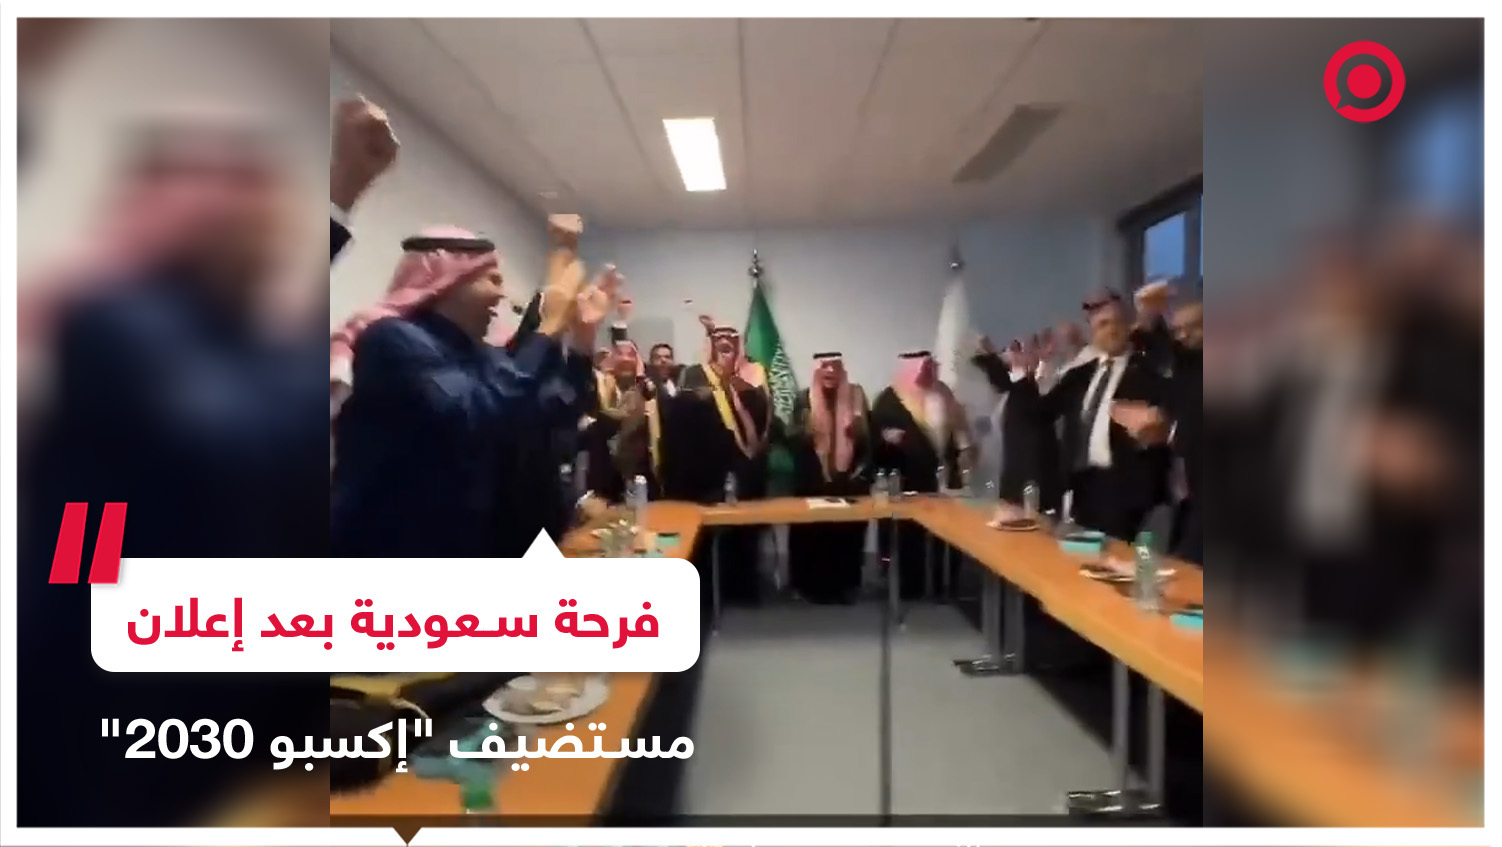 رد فعل مسؤولين سعوديين لحظة إعلان فوز المملكة باستضافة 